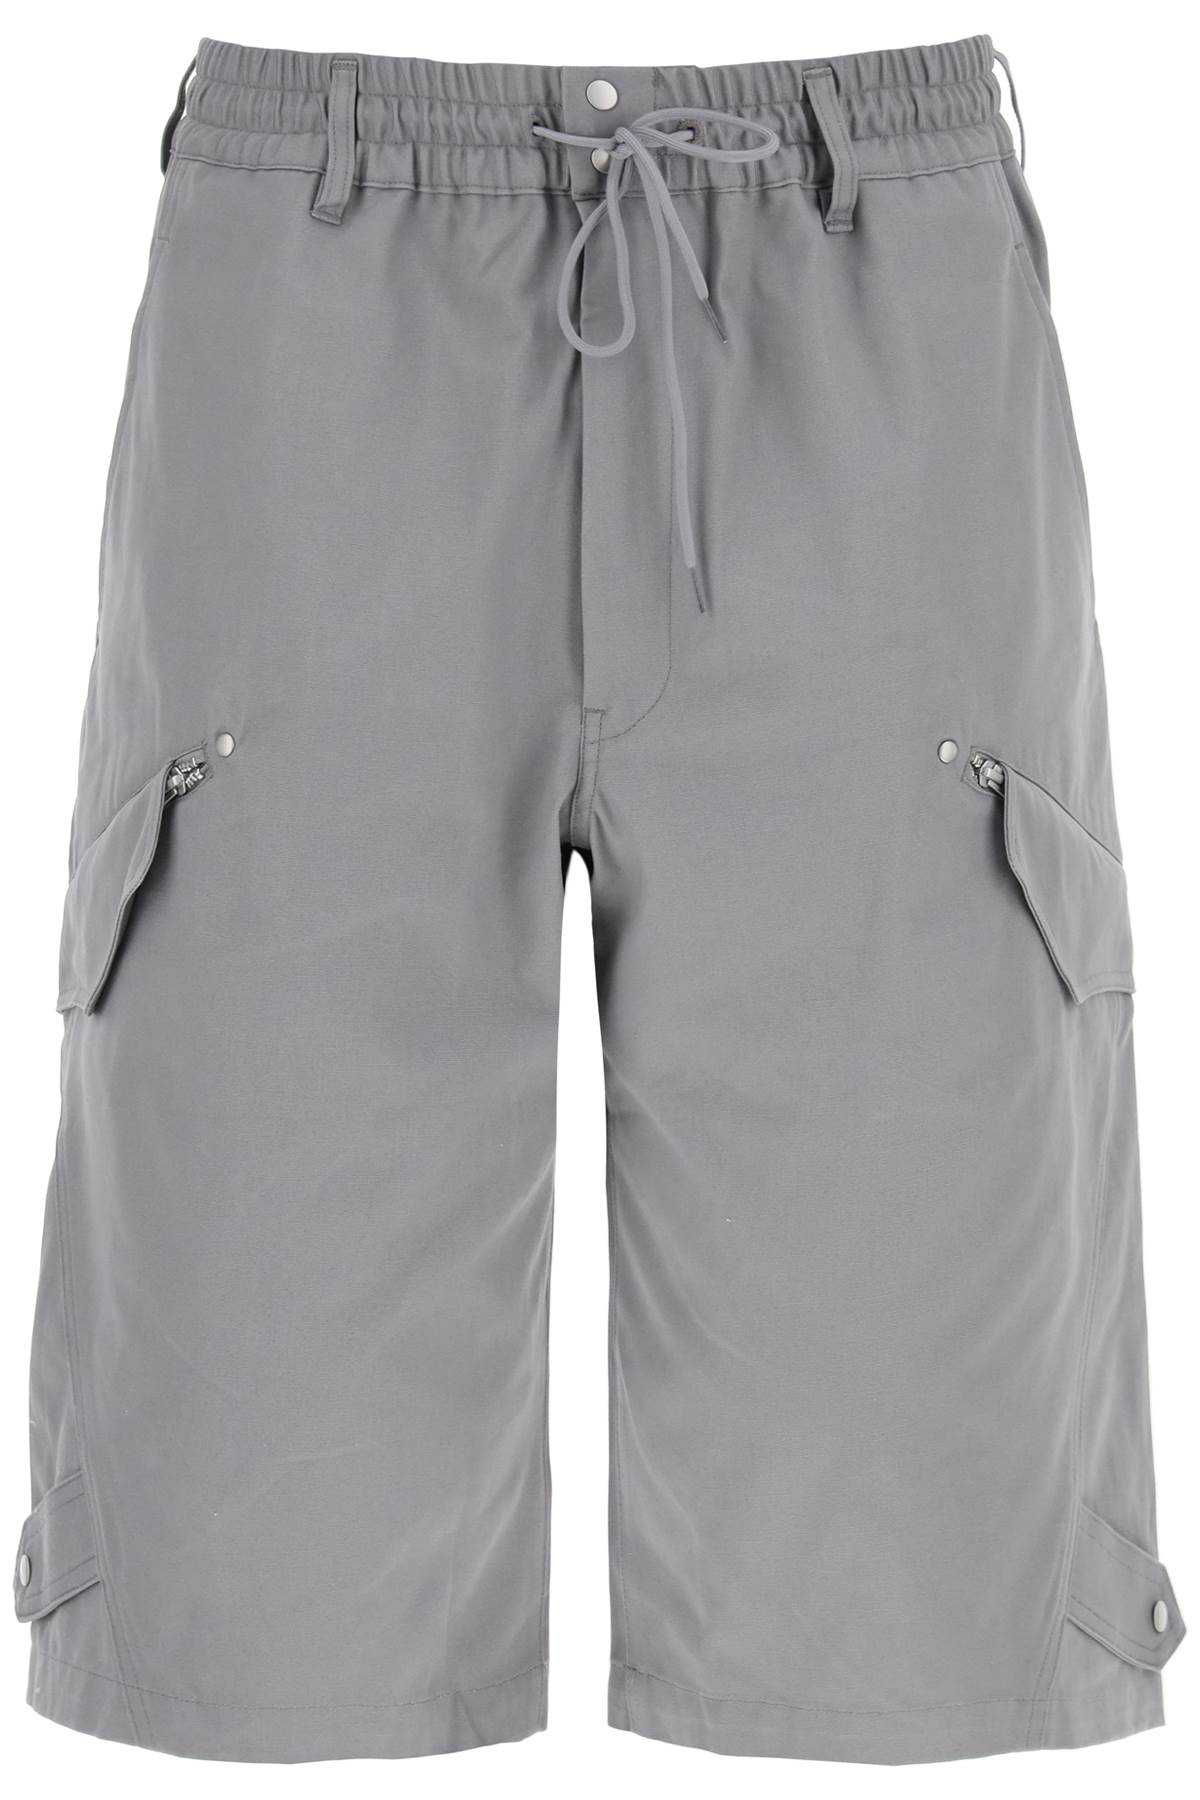 Y-3 canvas multi-pocket bermuda shorts. - Grey